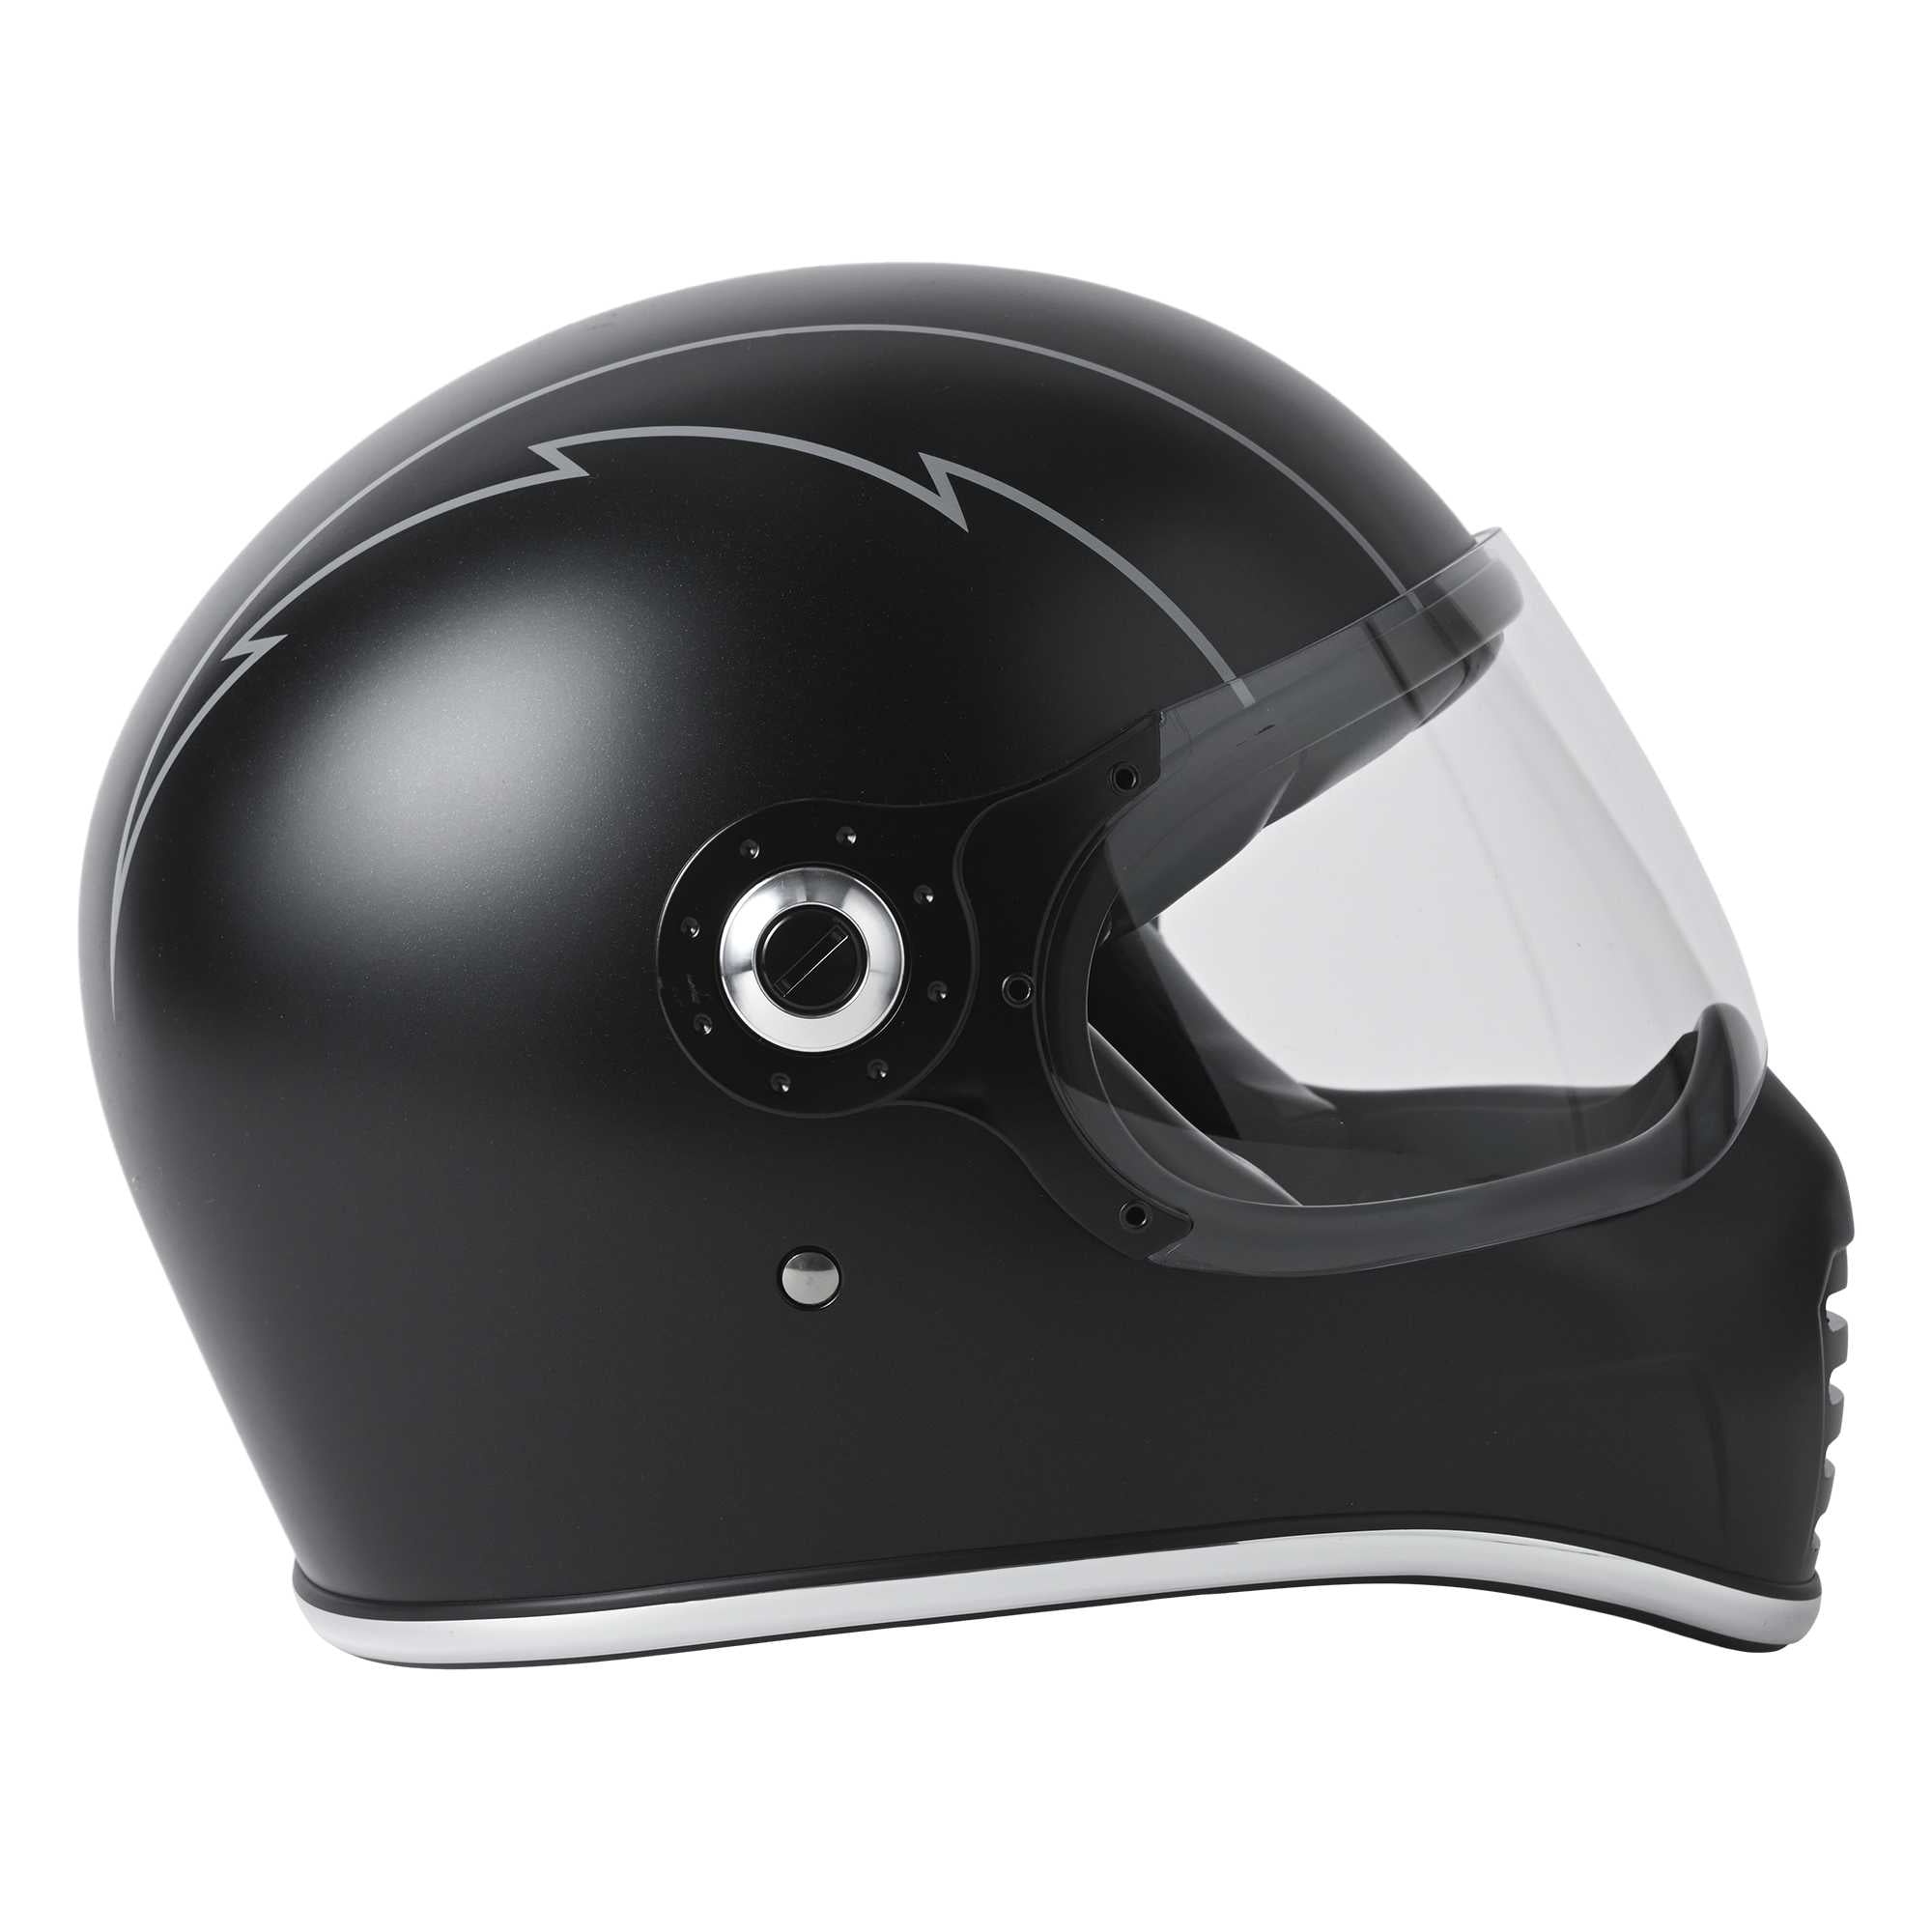 RIDEZ XX HELMET 限量型号 THUNDER BOLT 全脸摩托车头盔